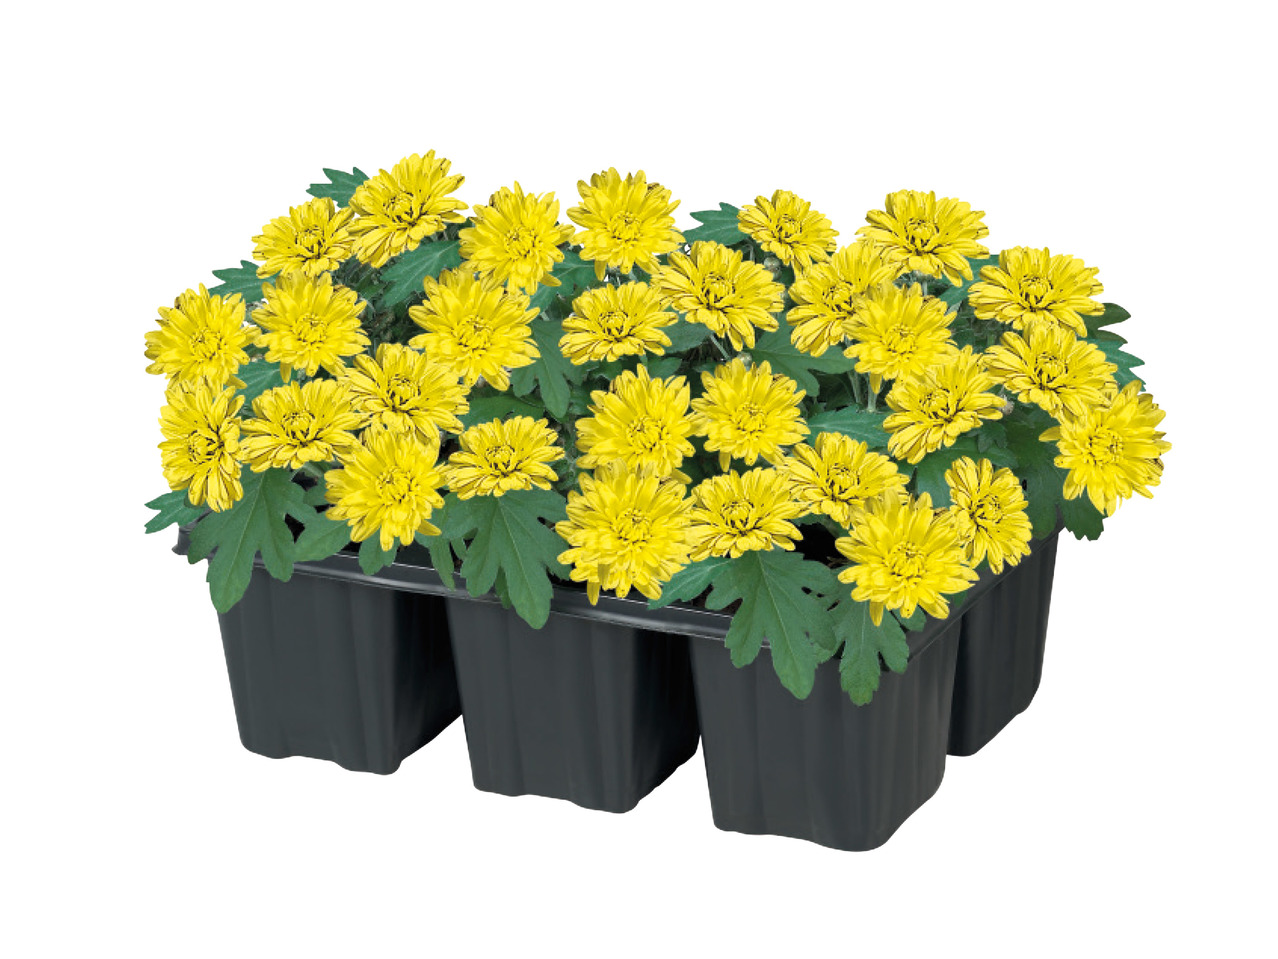 Chrysanthemum1